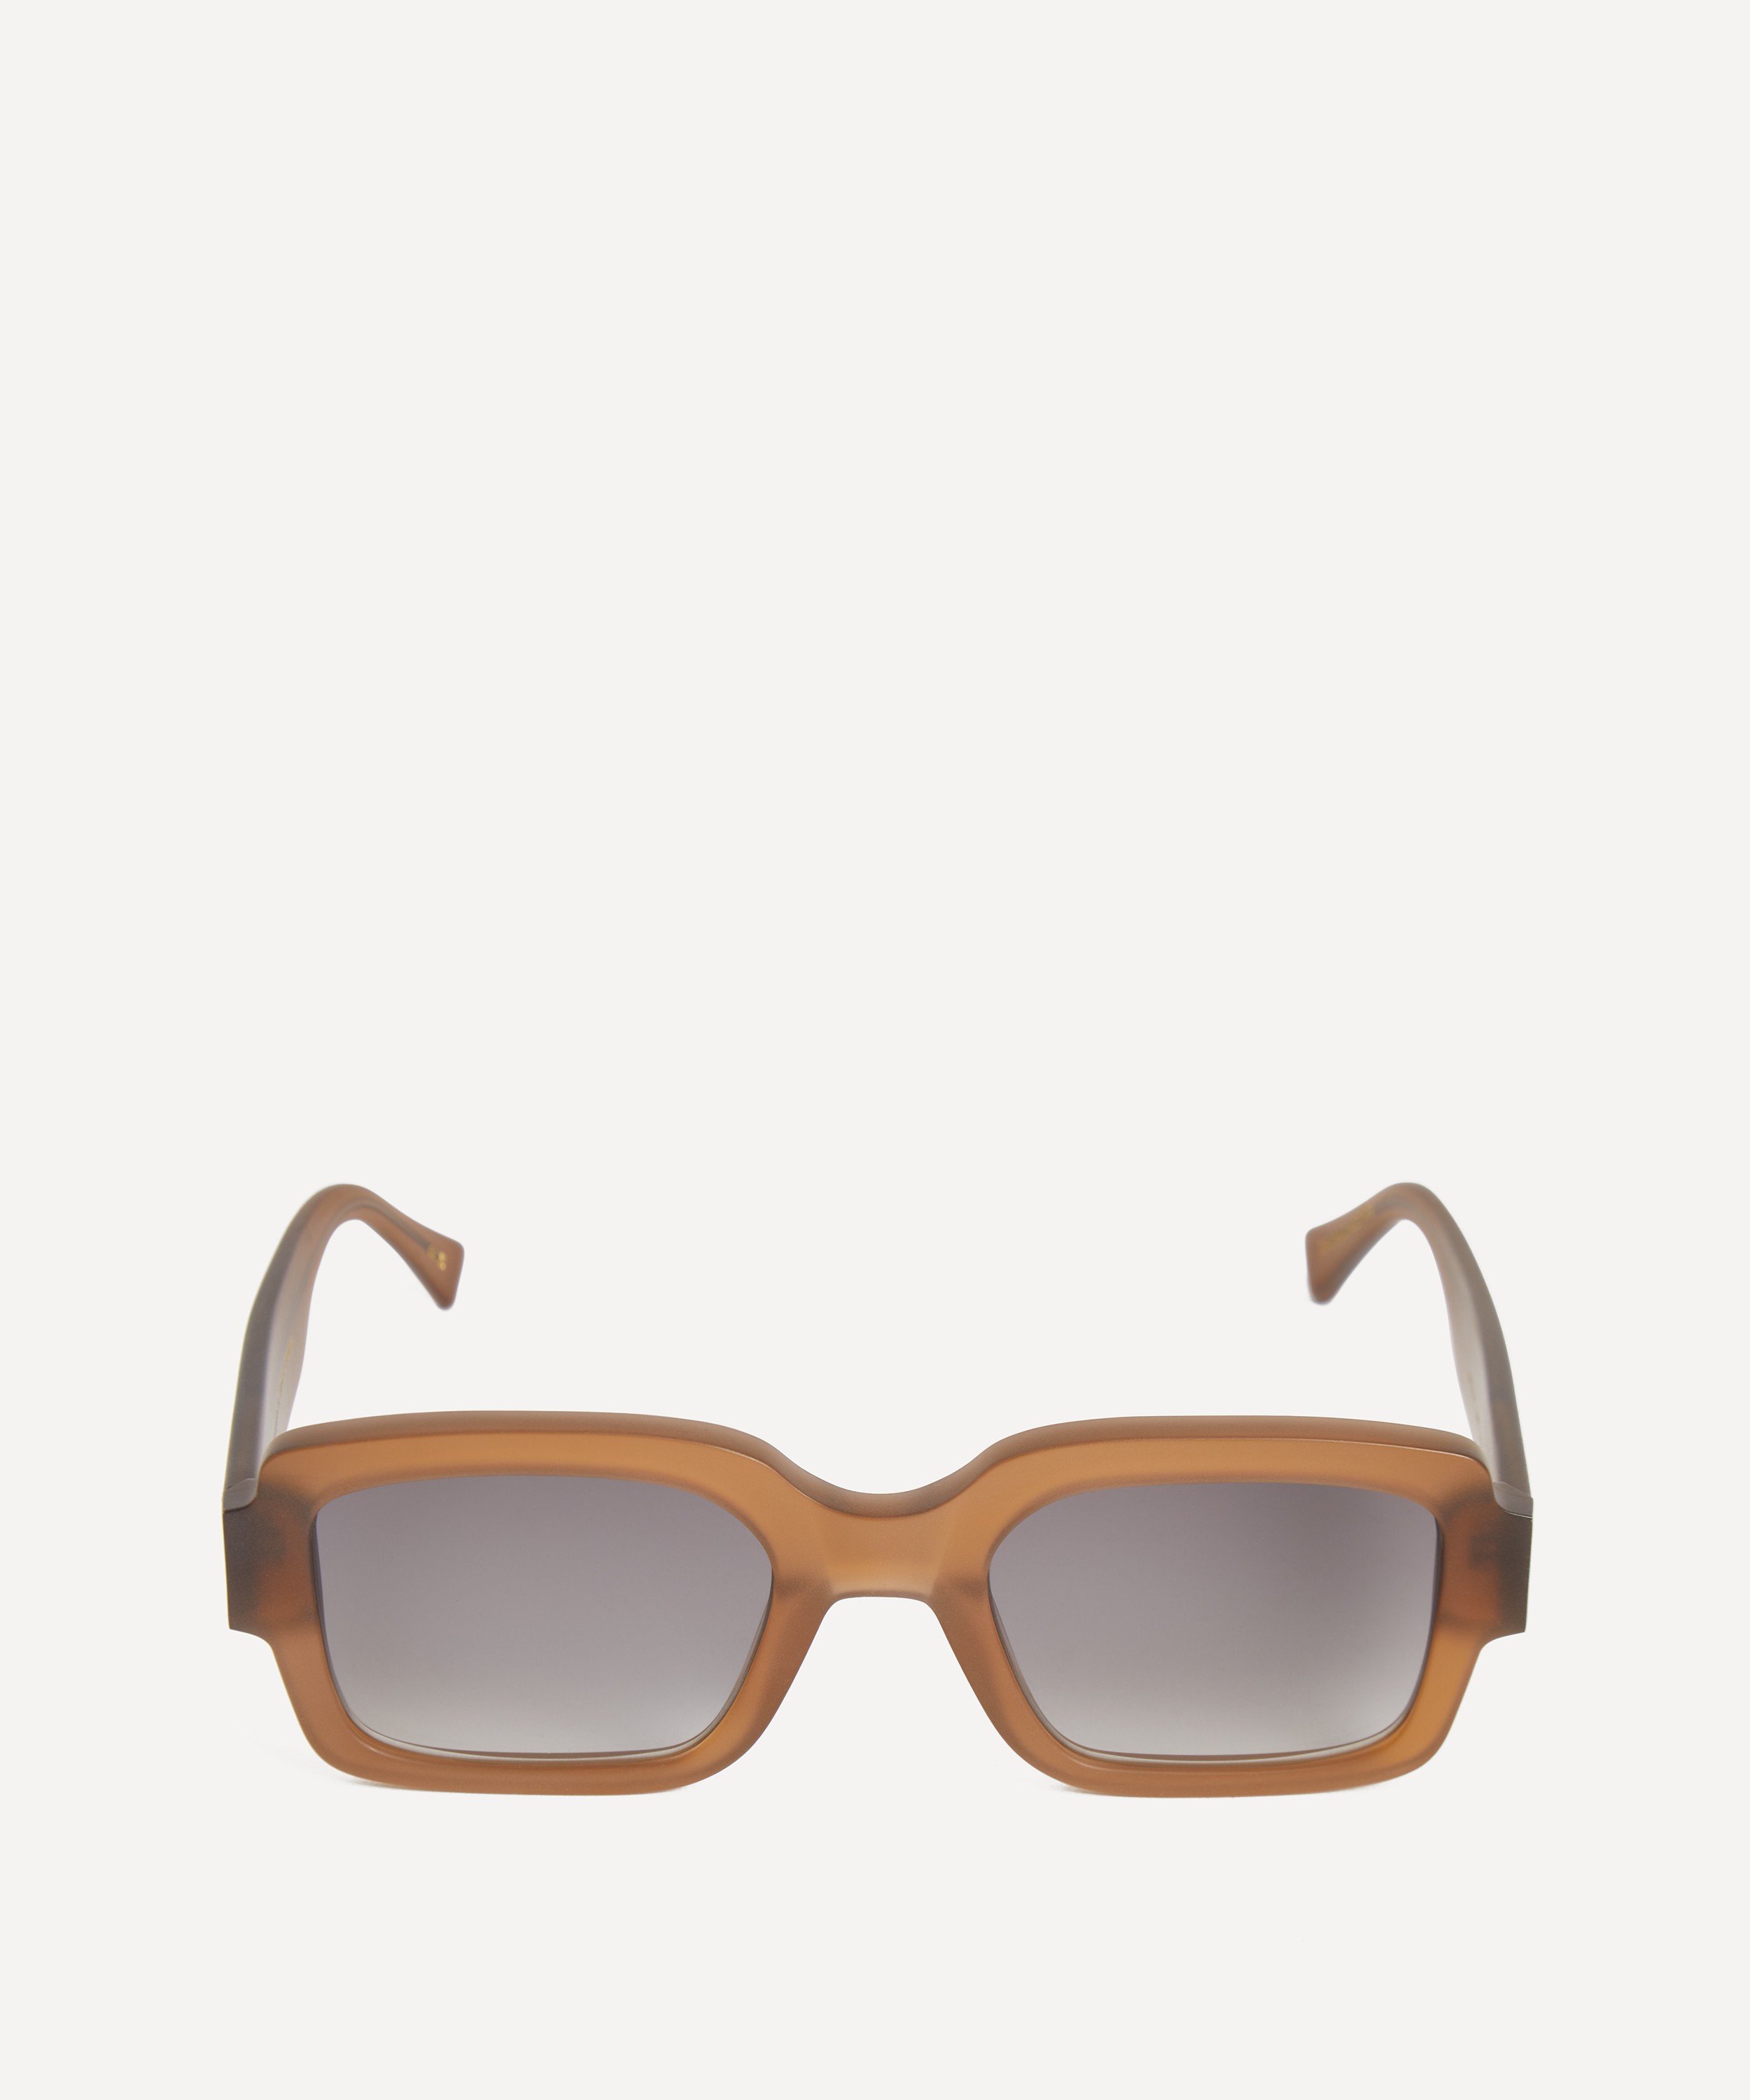 Monokel Eyewear - Apollo Rectangle Sunglasses image number 0